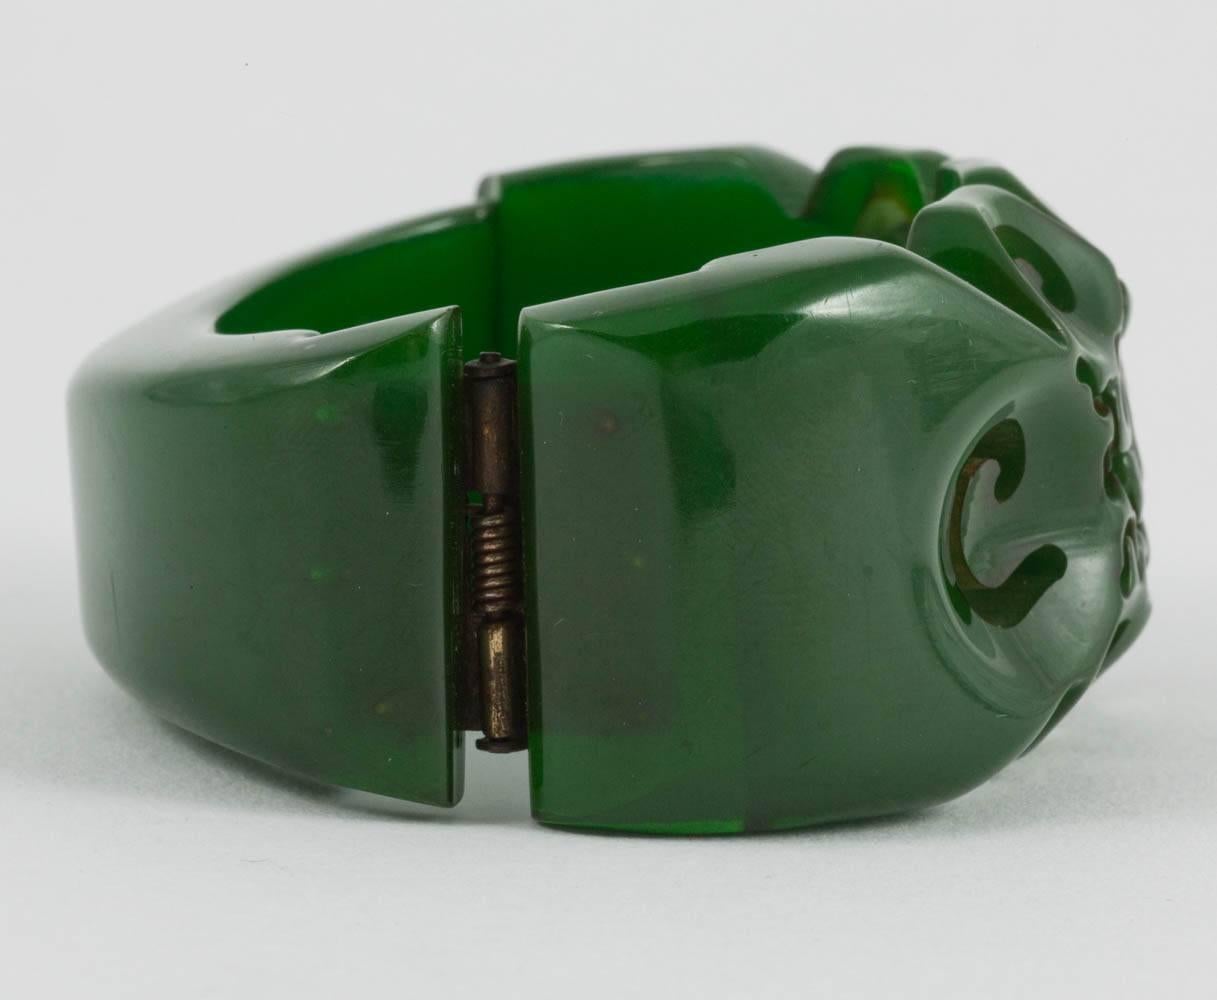 Ein wunderschönes, handgeschnitztes Bakelitarmband in einem warmen, tiefen Grün aus den 1930er Jahren.
Dieses Armband ist eines von drei, die in dieser Woche aufgelistet sind, und alle drei können zusammen getragen werden, im berühmten Stil von